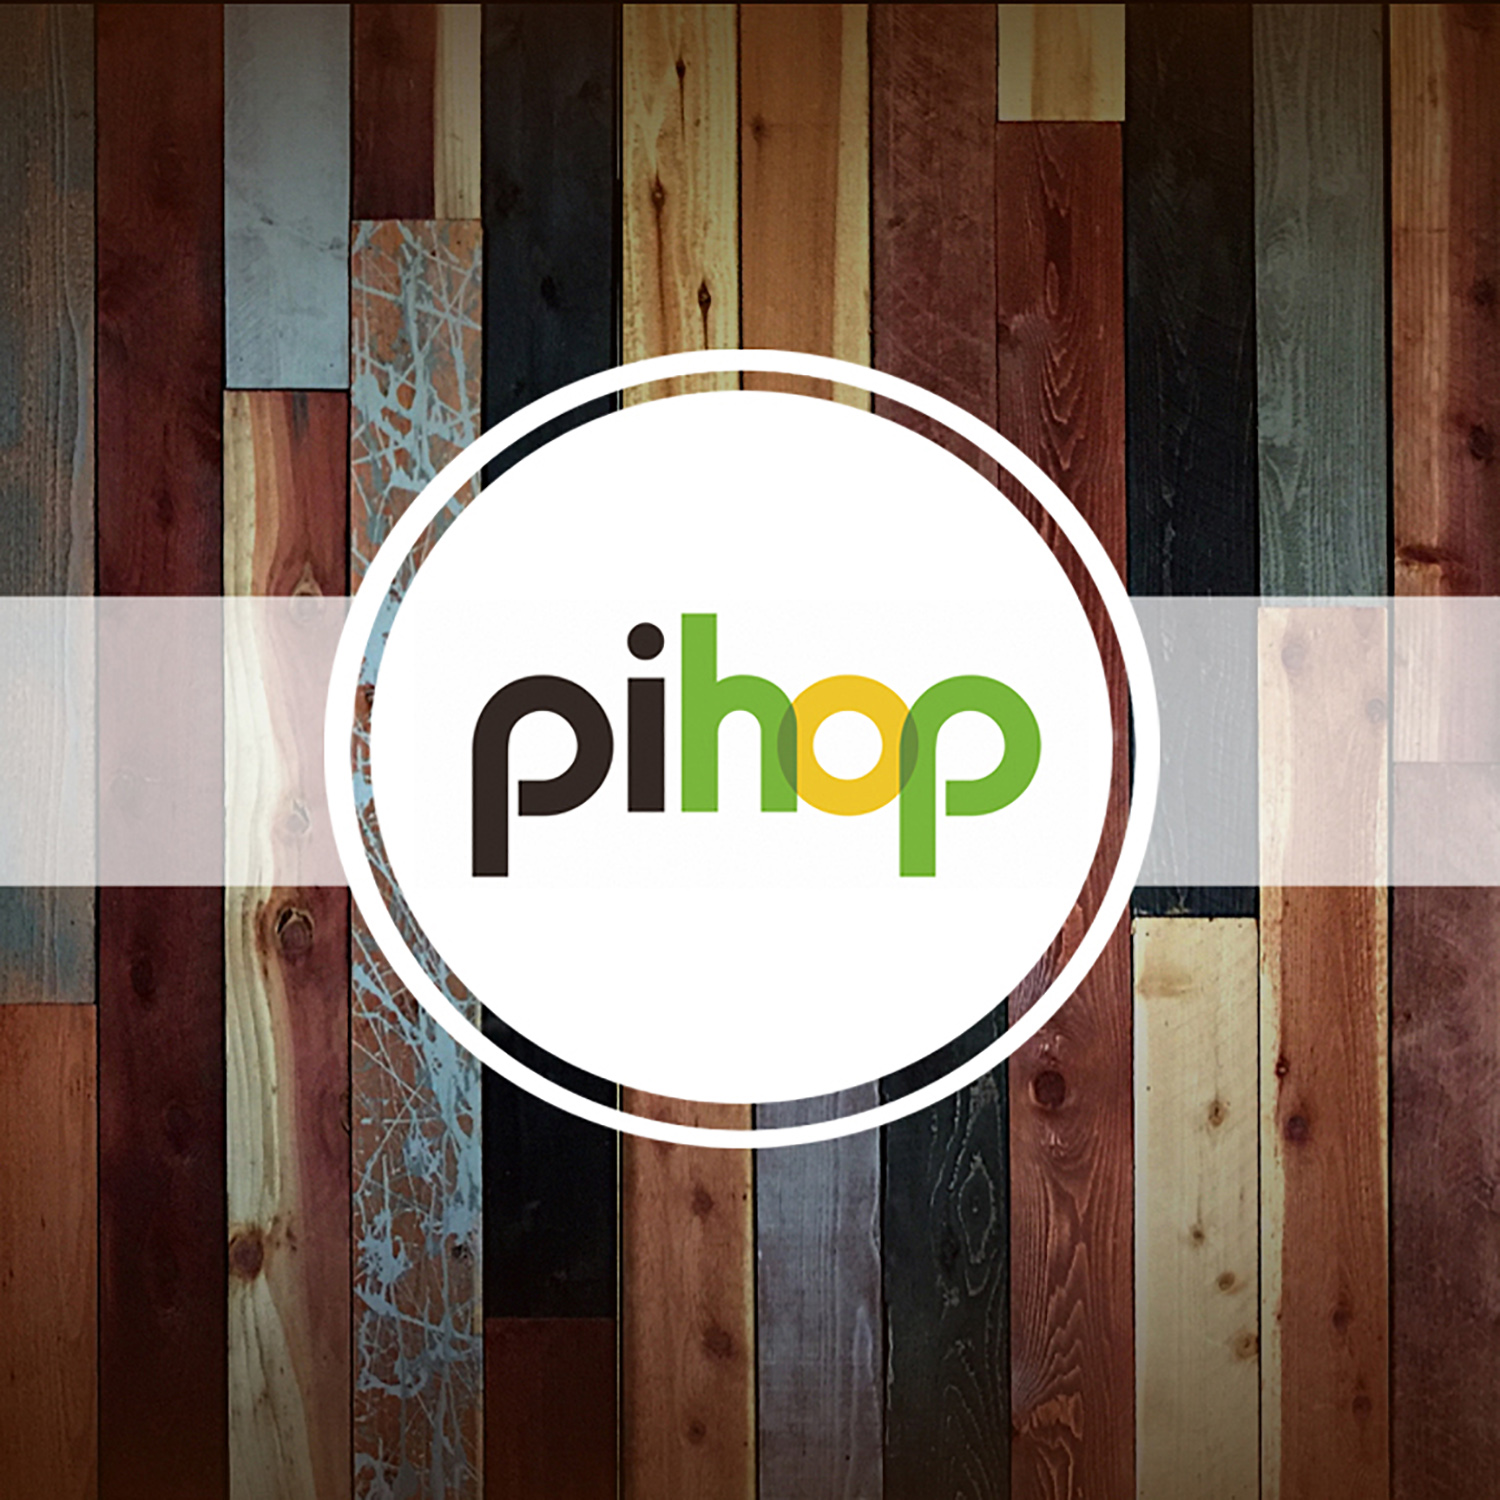 Pihop Podcast - PIHOP